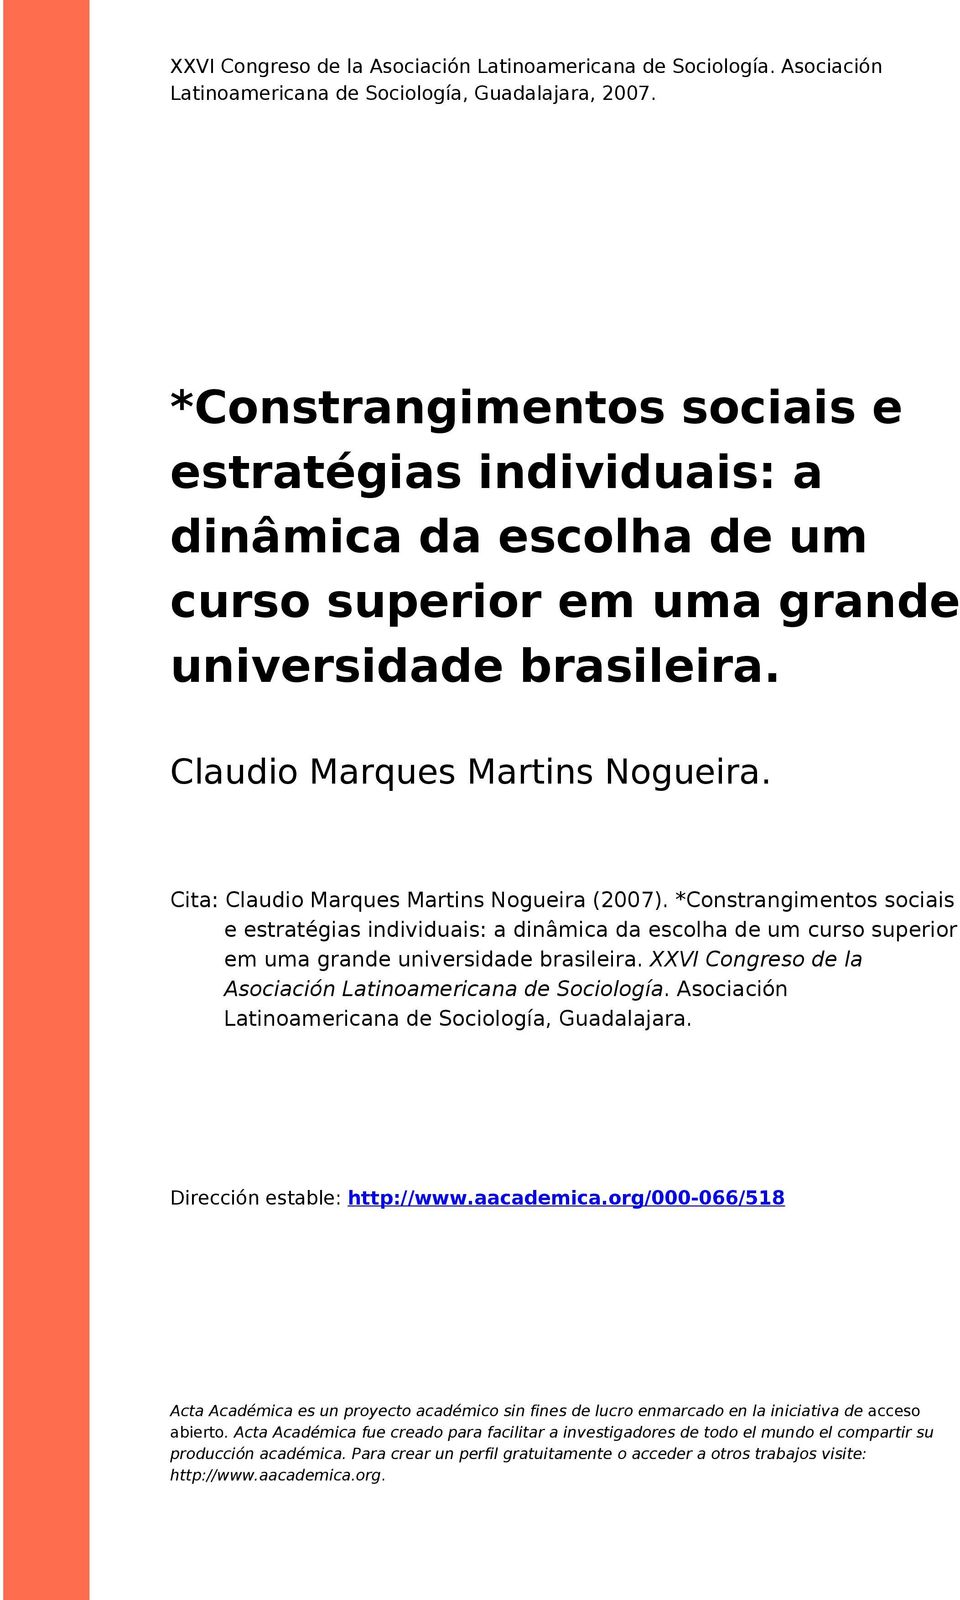 Cia: Claudio Marques Marins Nogueira (2007). *Consrangimenos sociais e esraégias individuais: a dinâmica da escolha de um curso superior em uma grande universidade brasileira.